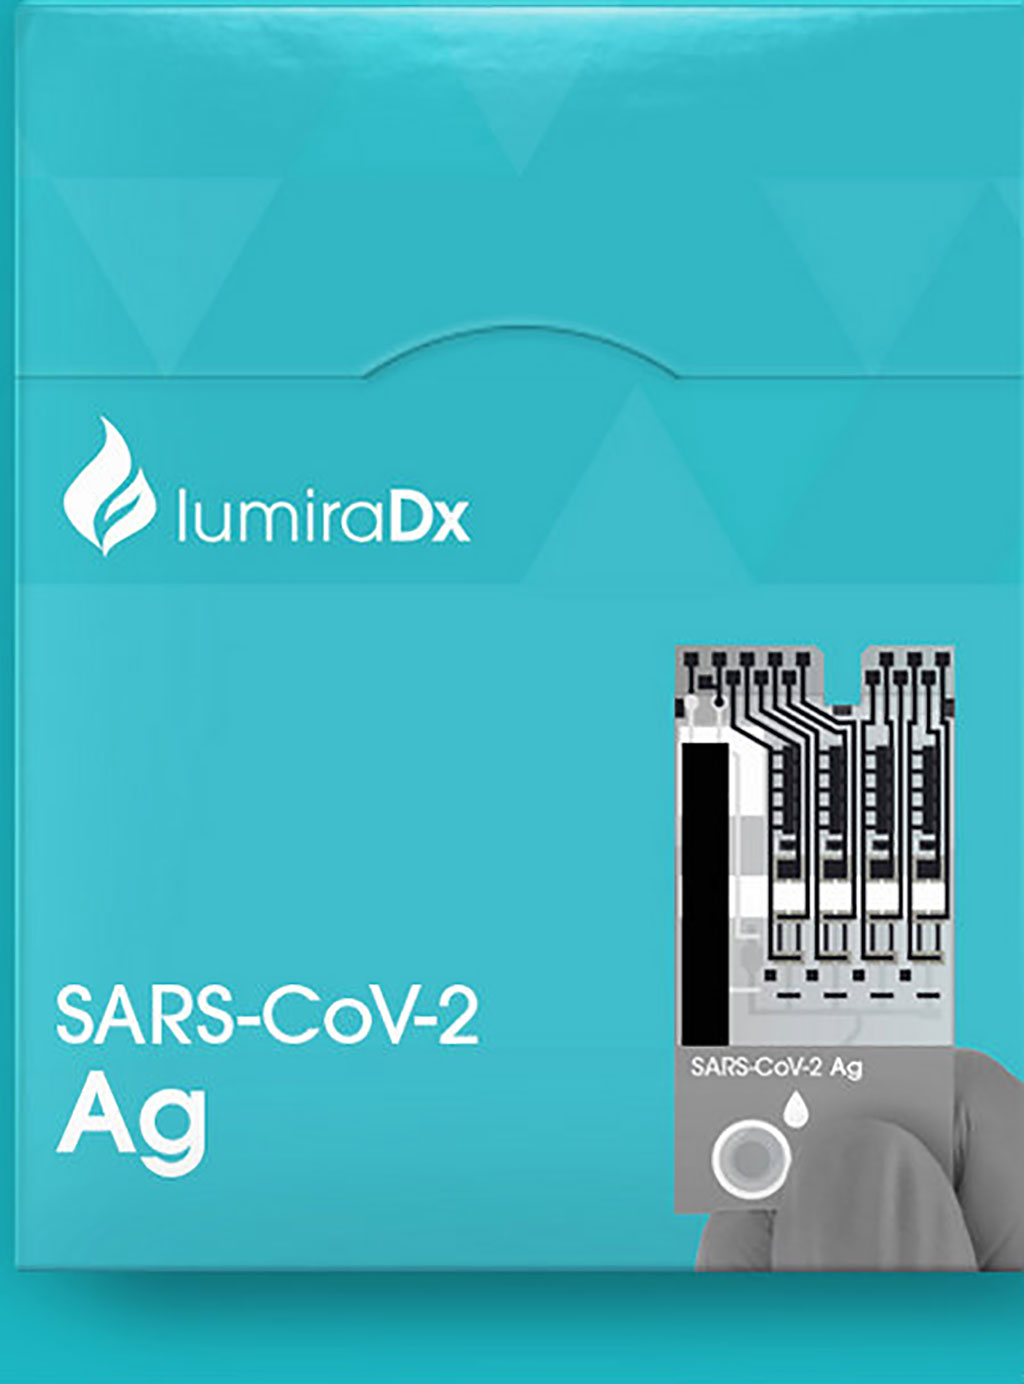 Image: LumiraDx SARS-CoV-2 Ag Test (Photo courtesy of LumiraDx)